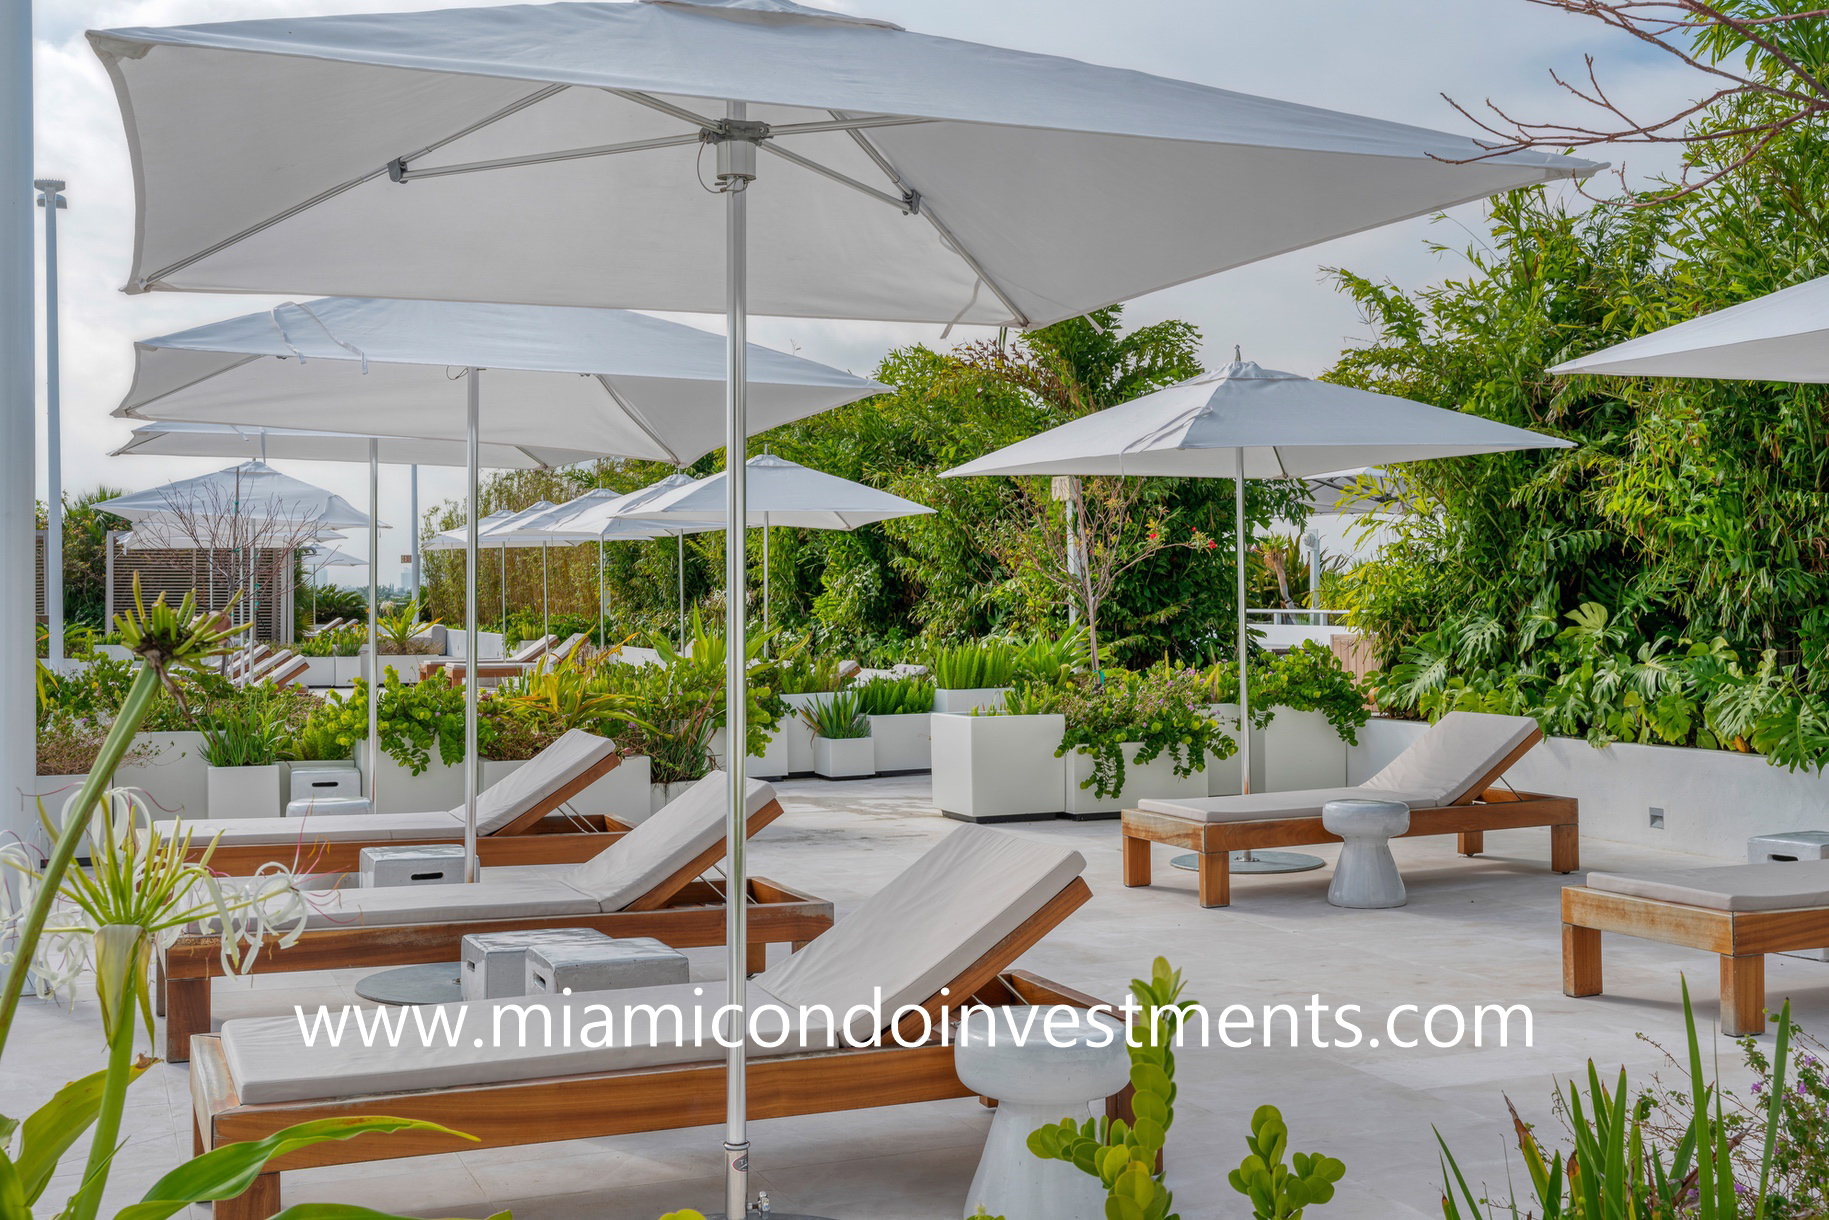 Ritz-Carlton Residences Miami Beach sundeck